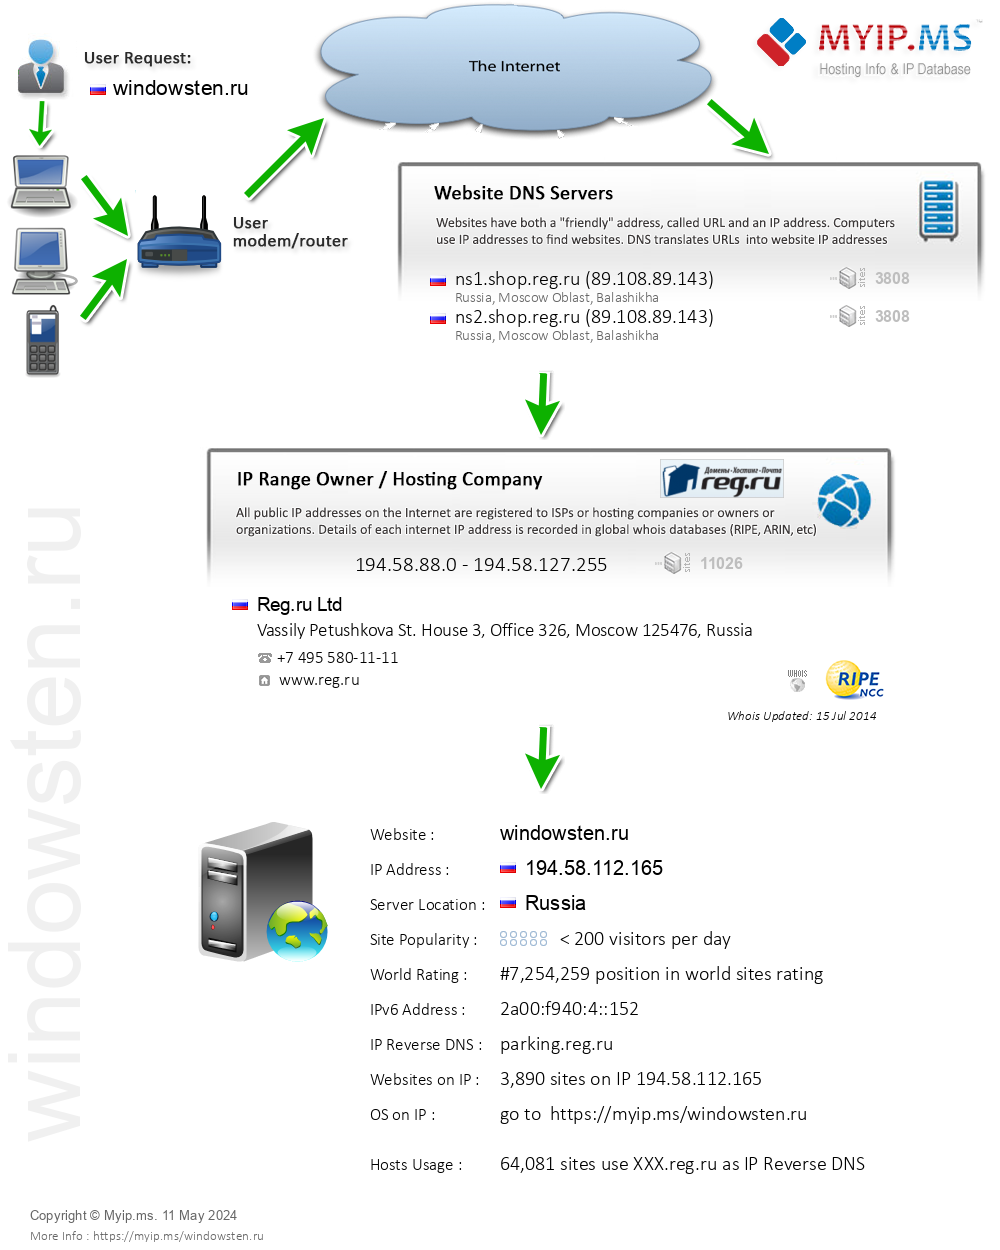 Windowsten.ru - Website Hosting Visual IP Diagram